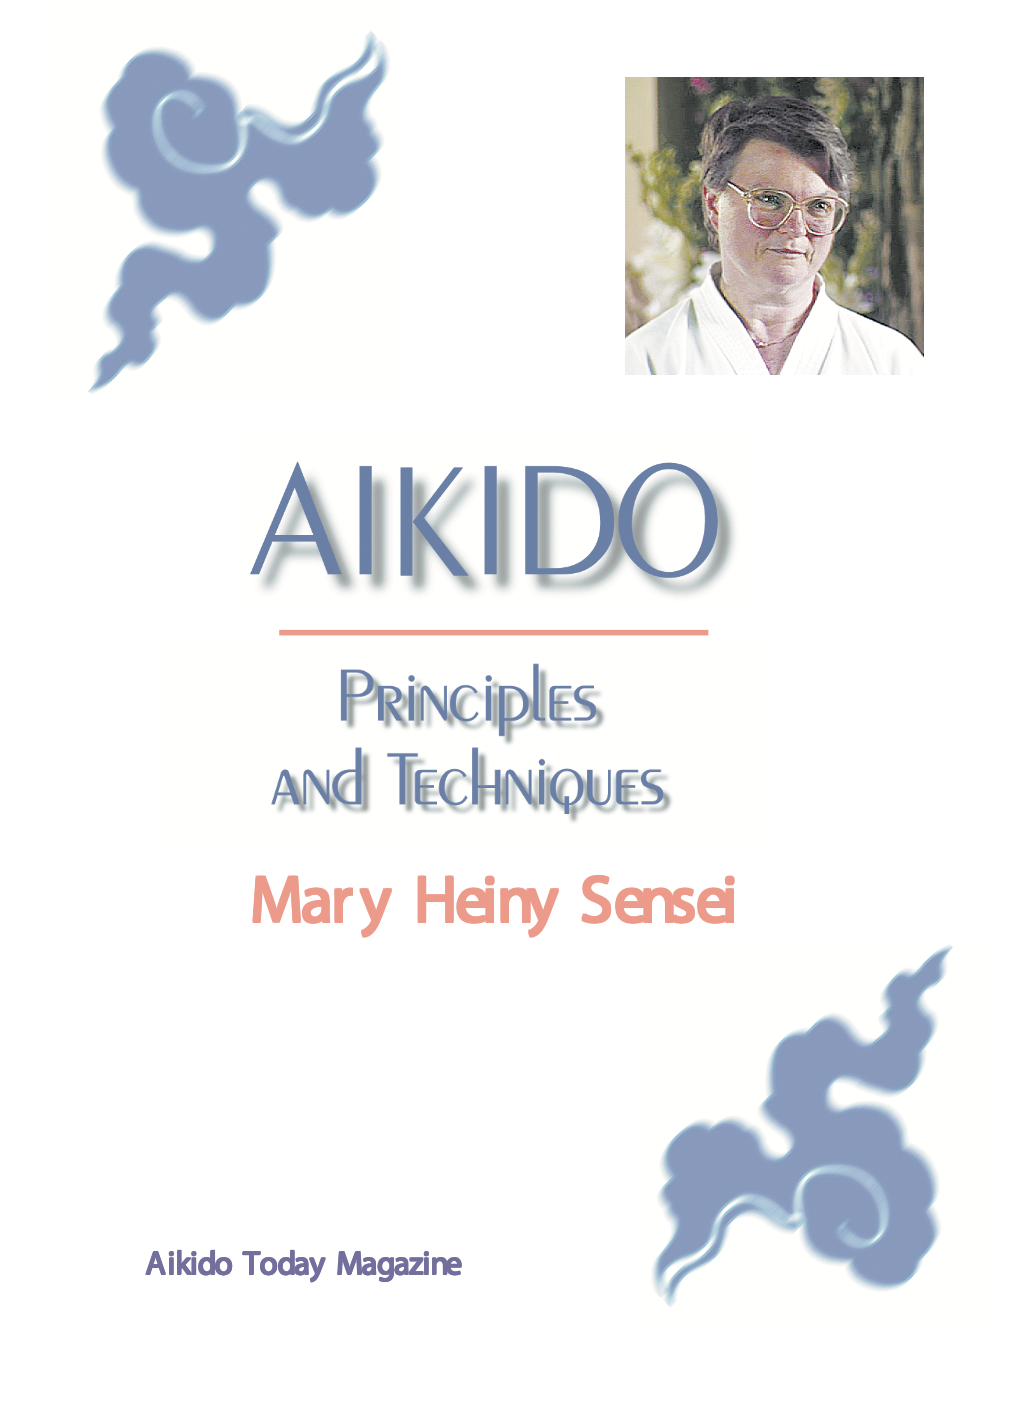 DVD de principios y técnicas de Aikido de Mary Heiny